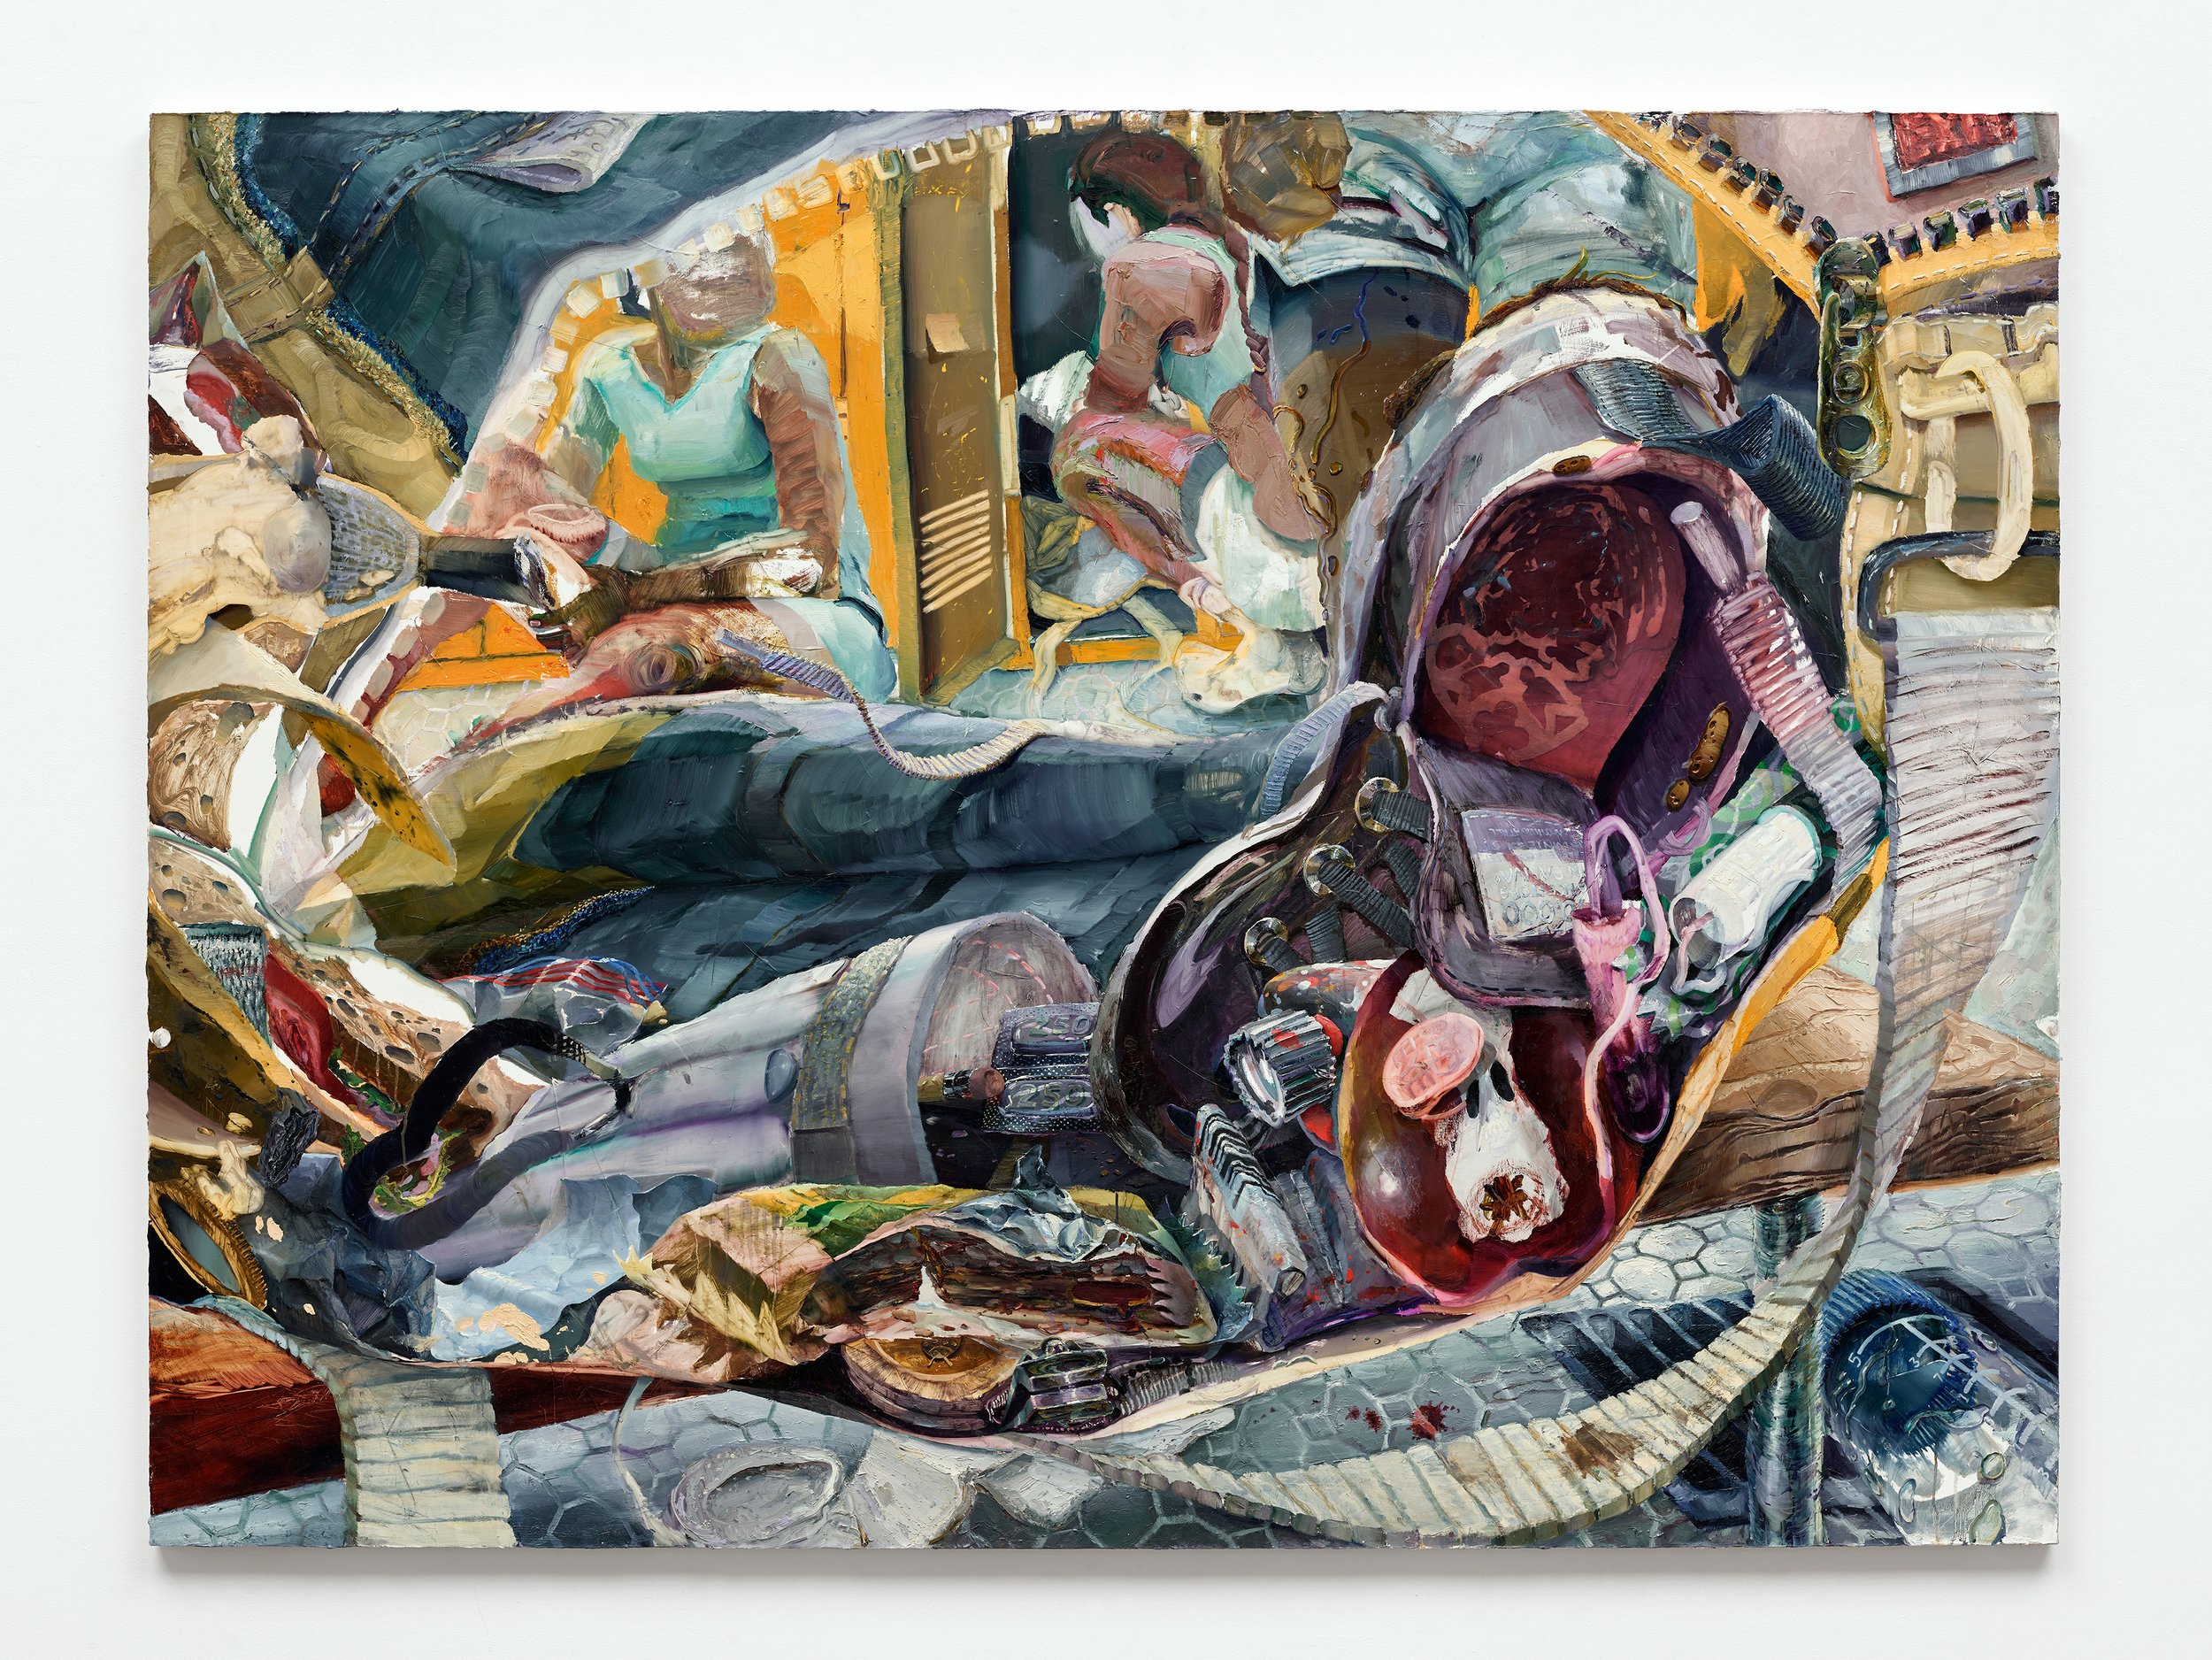   Locker talker , 2022, oil on canvas, 72 x 96 in 